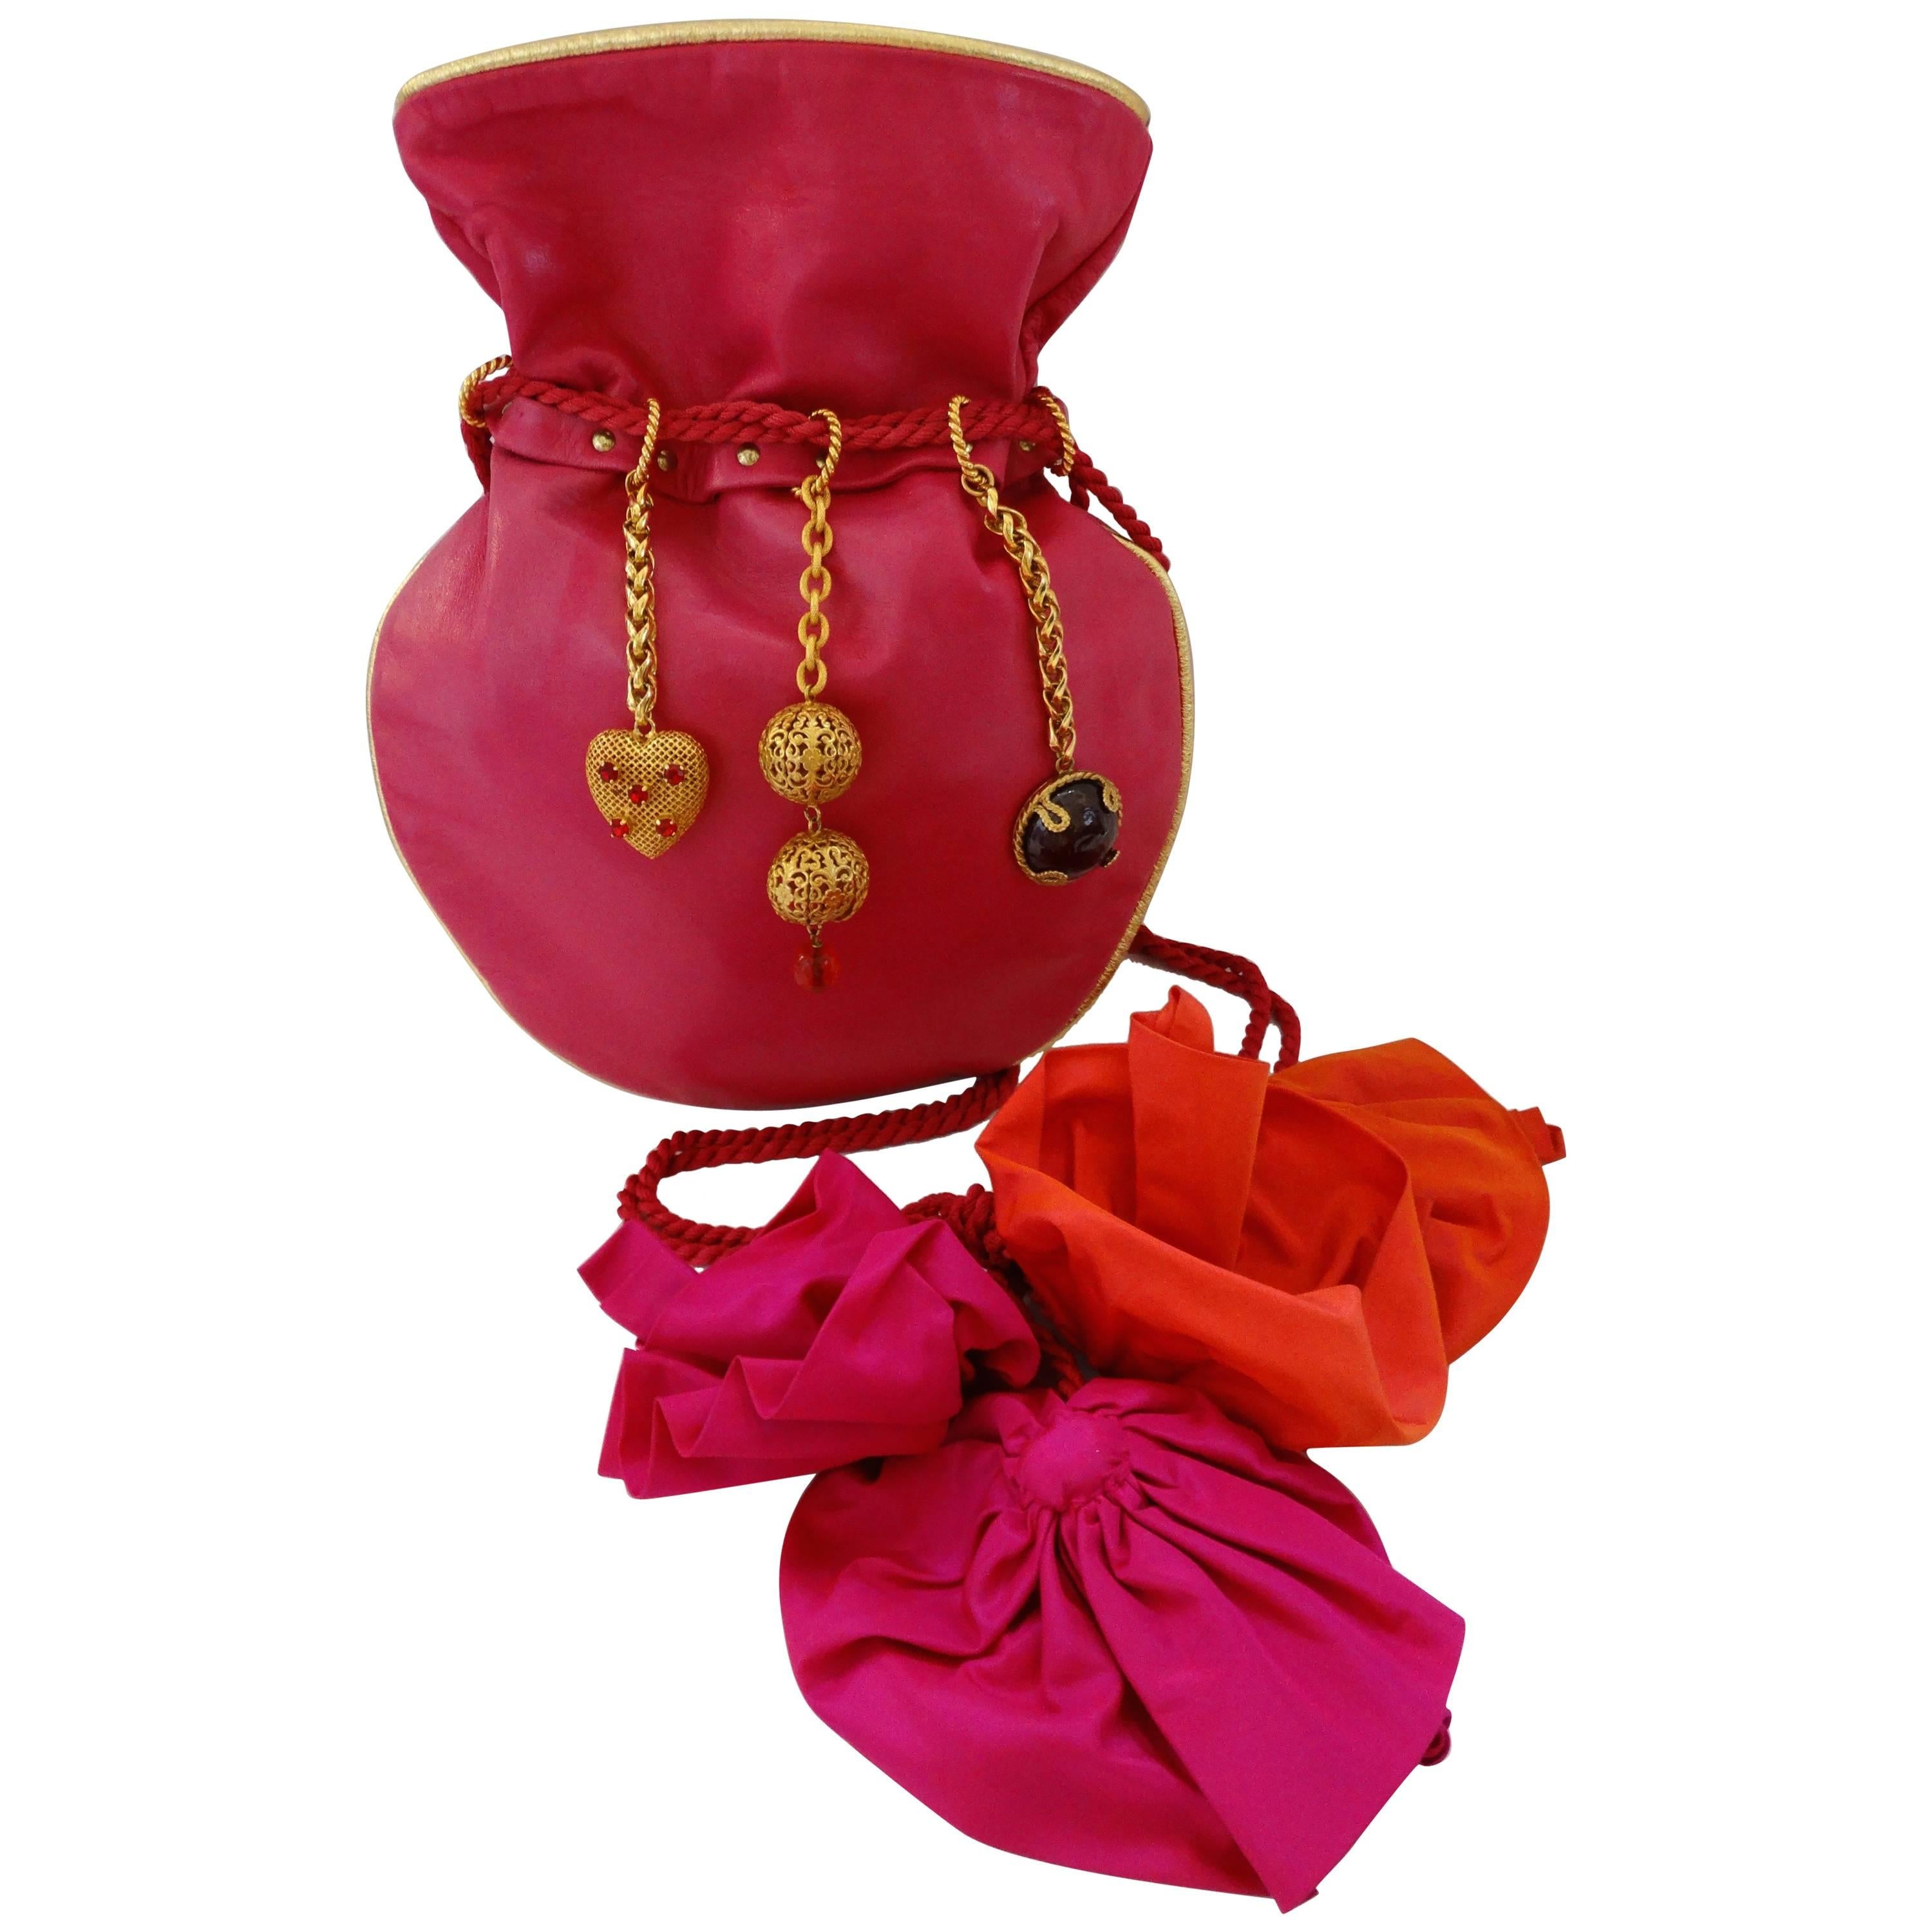 1990s Dominique Aurientis Pink Leather Charm Bag